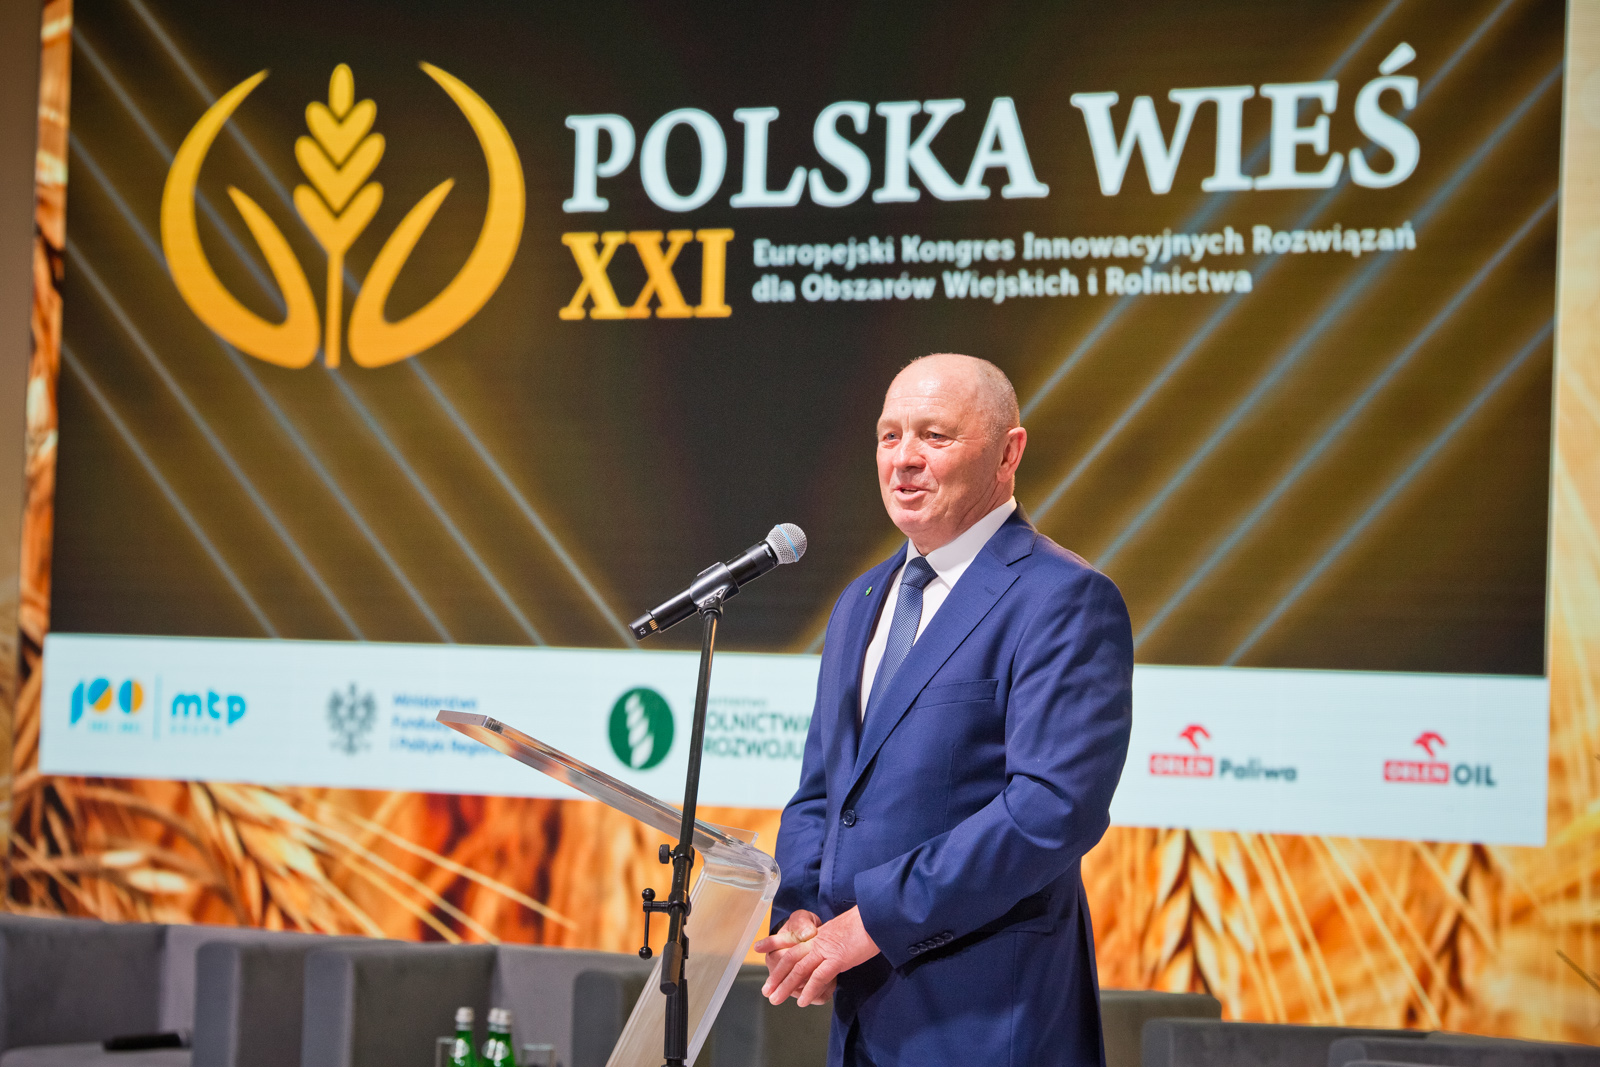 „Polska wieś XXI” – program kongresu